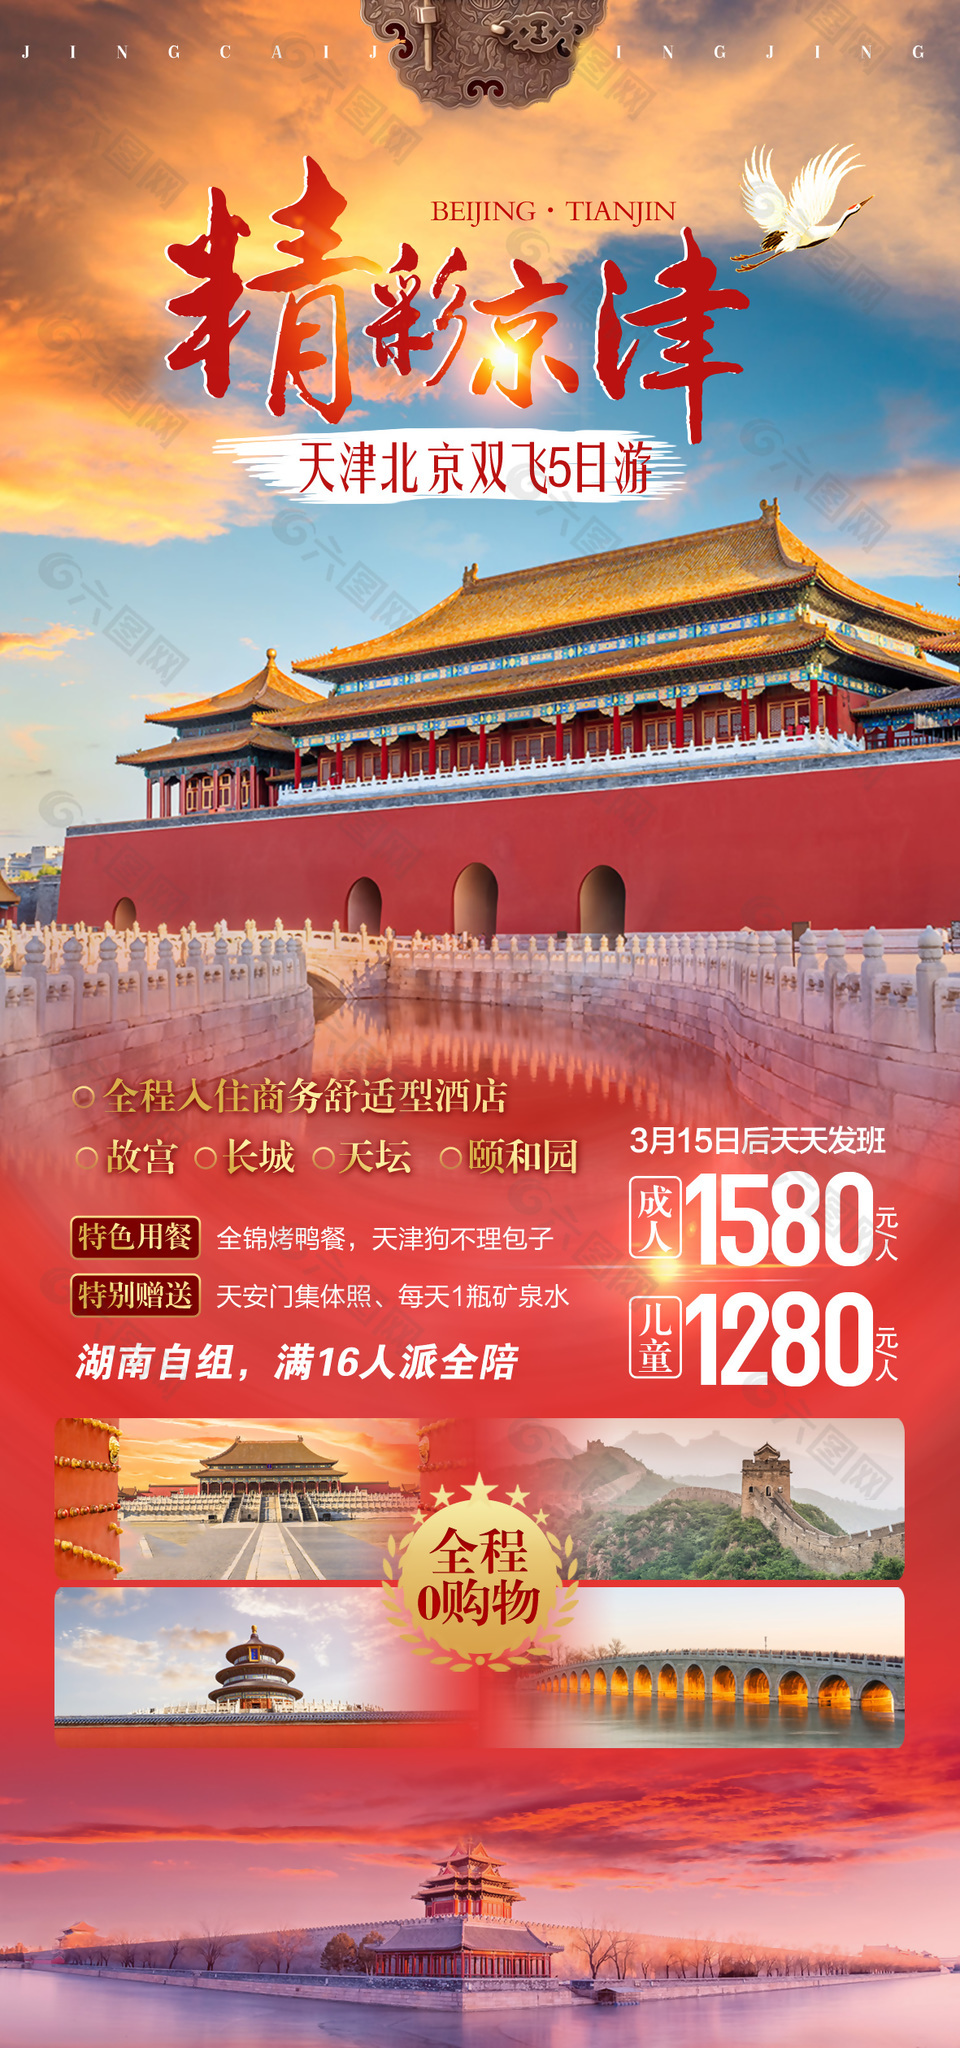 首都天津双飞五日旅游海报